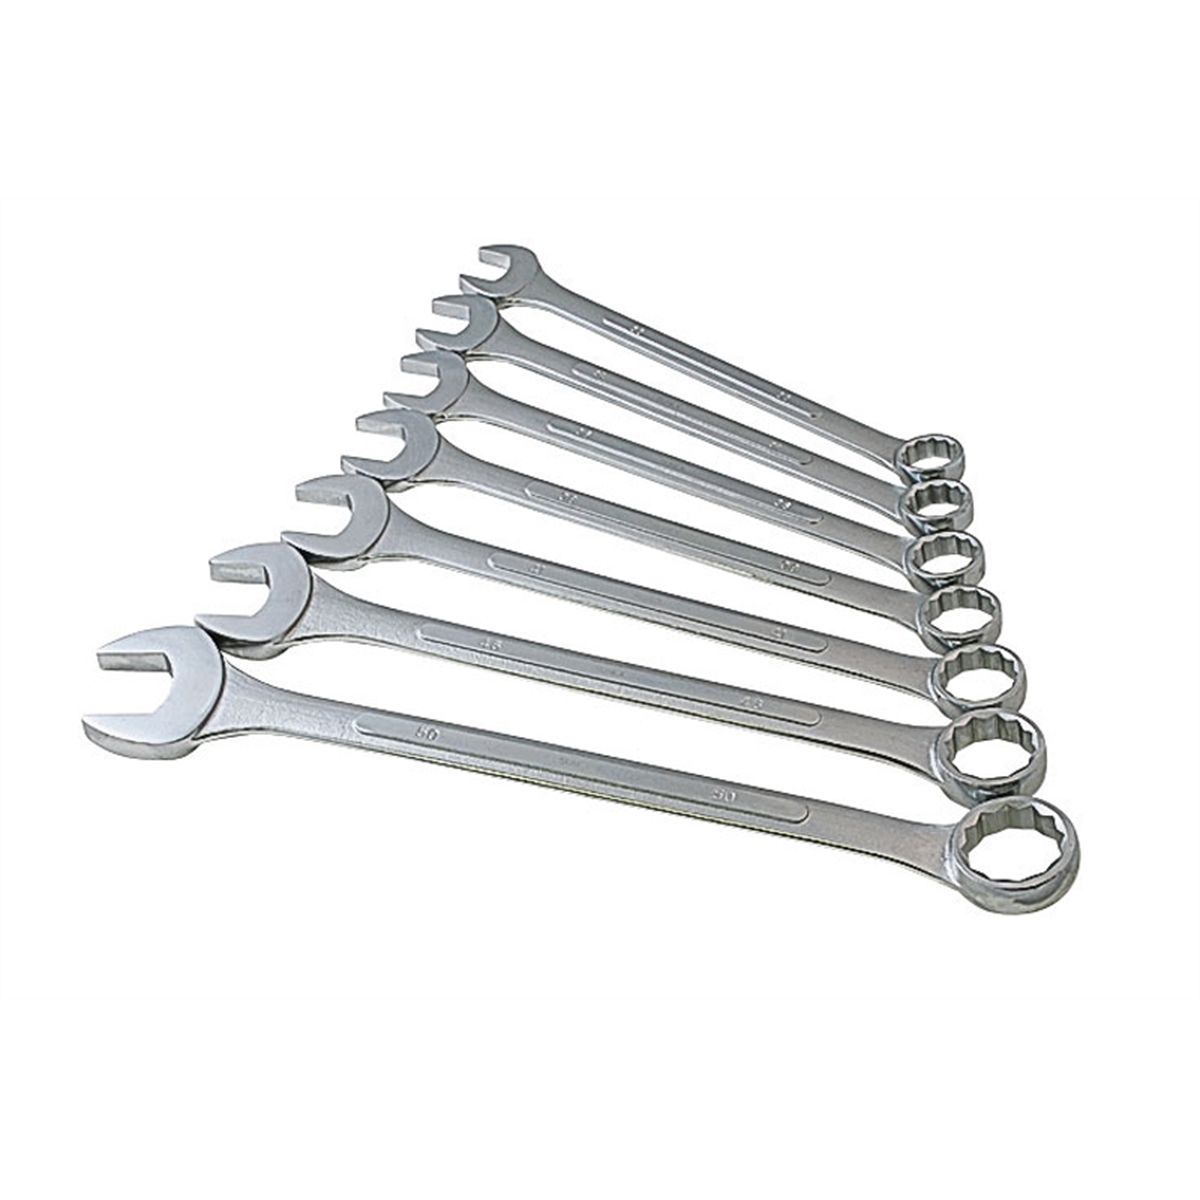 Jumbo Metric Wrench Set - 7-Pc